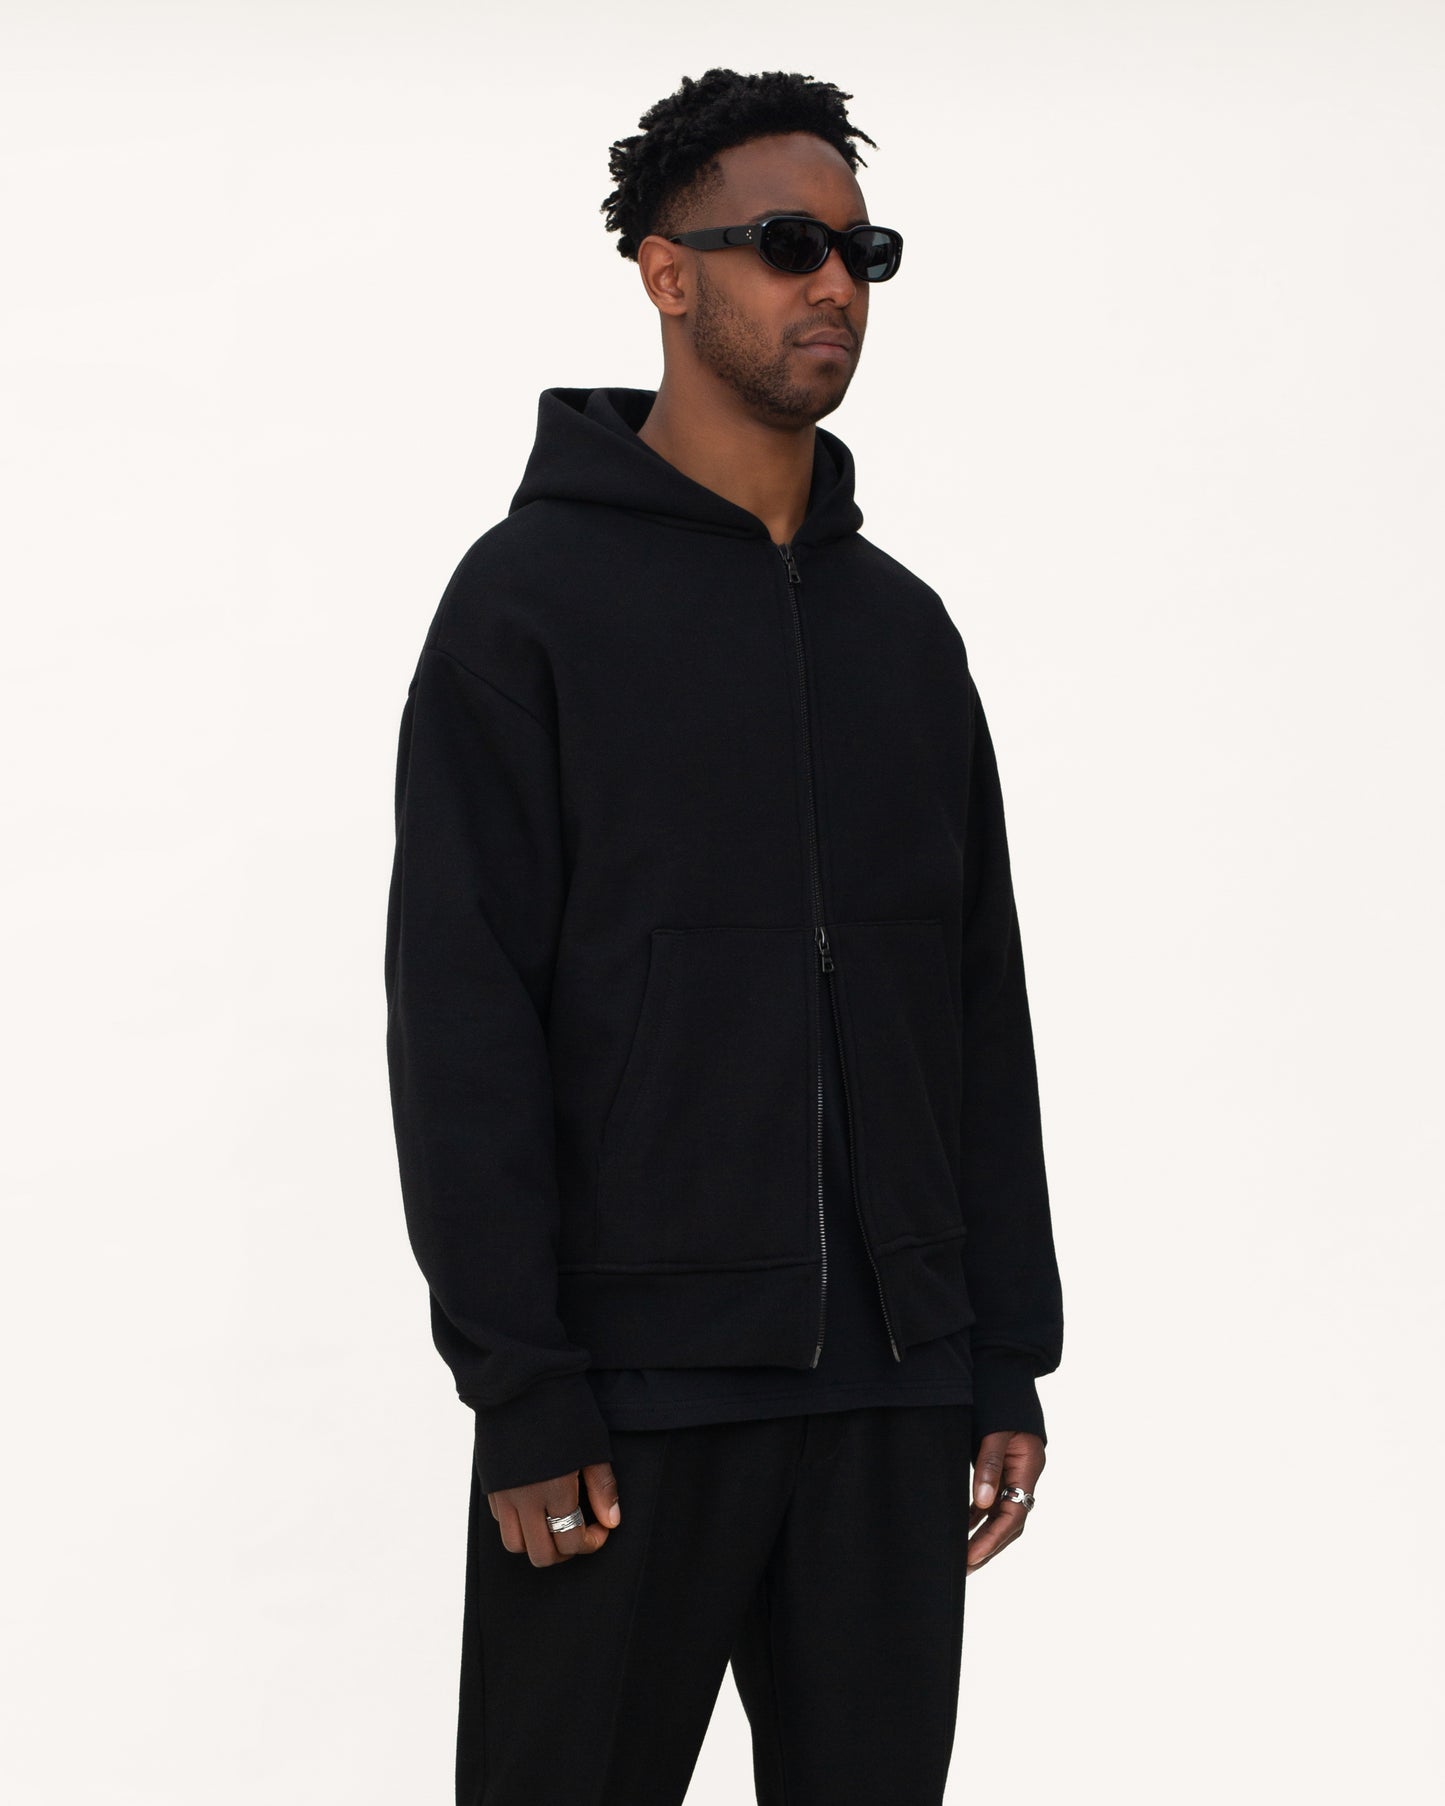 zip up hoodies, black hoodie, mens hoodie, angle side